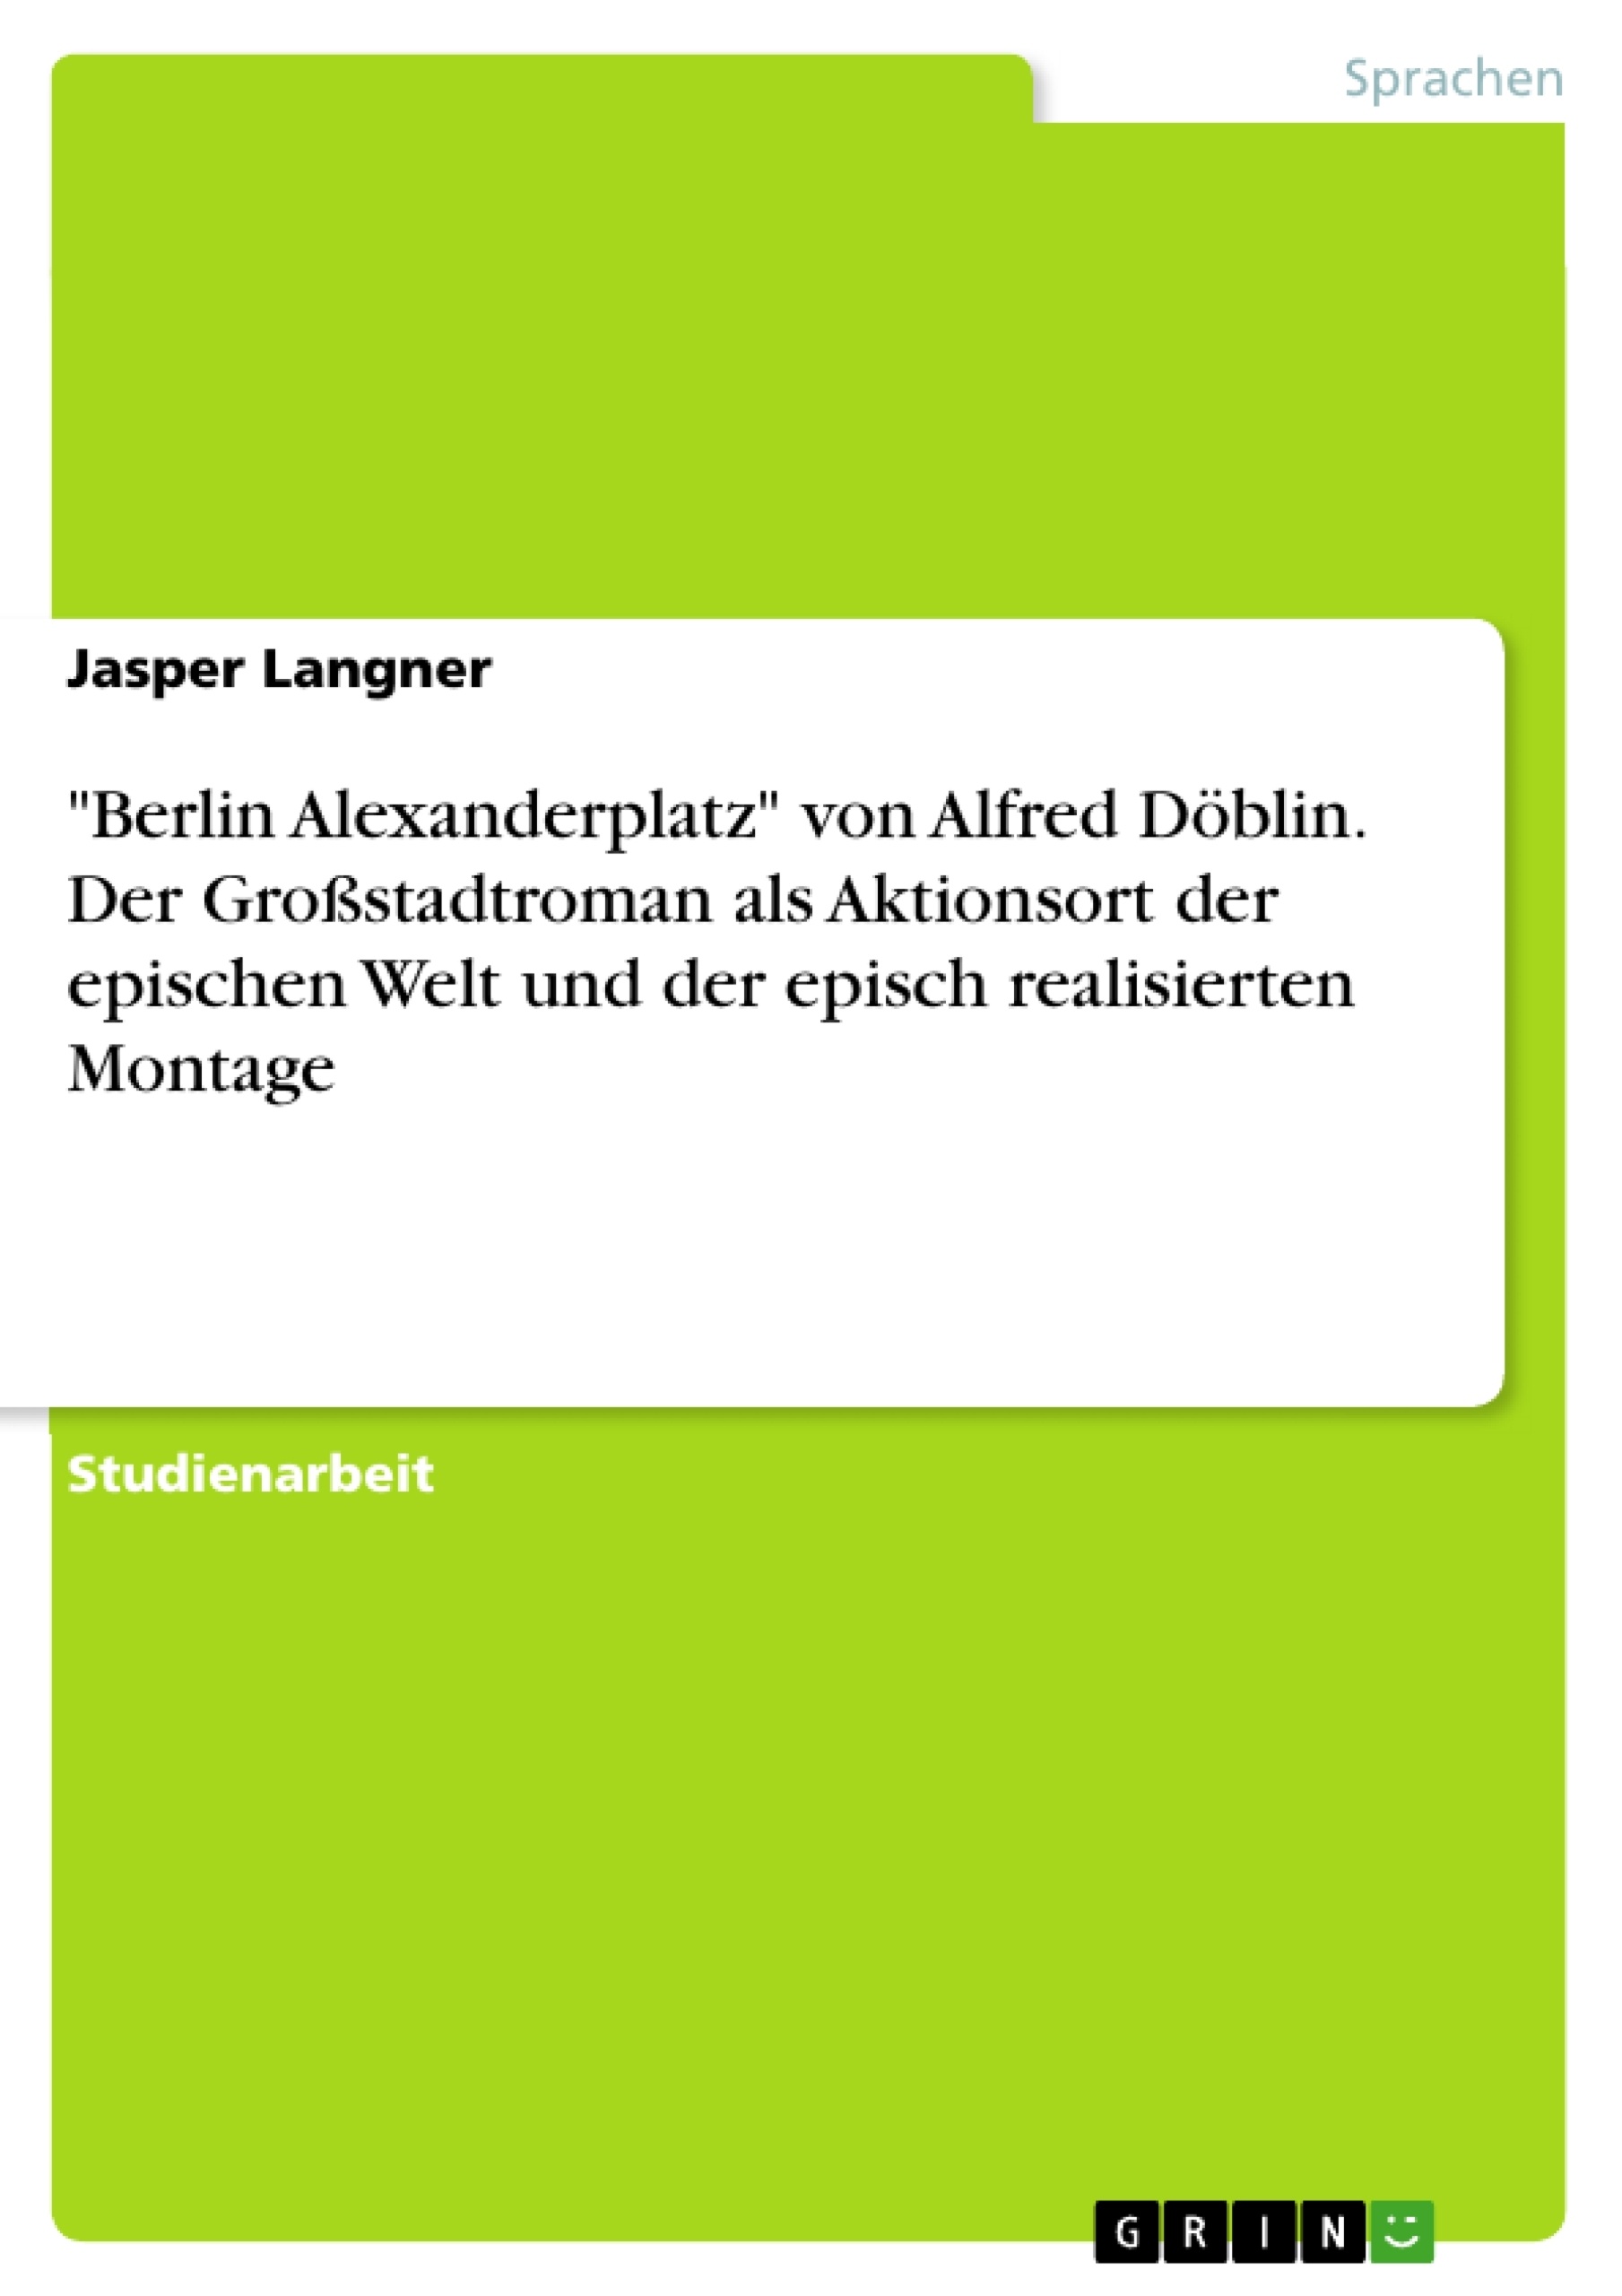 Title: "Berlin Alexanderplatz" von Alfred Döblin. Der Großstadtroman als Aktionsort der epischen Welt und der episch realisierten Montage